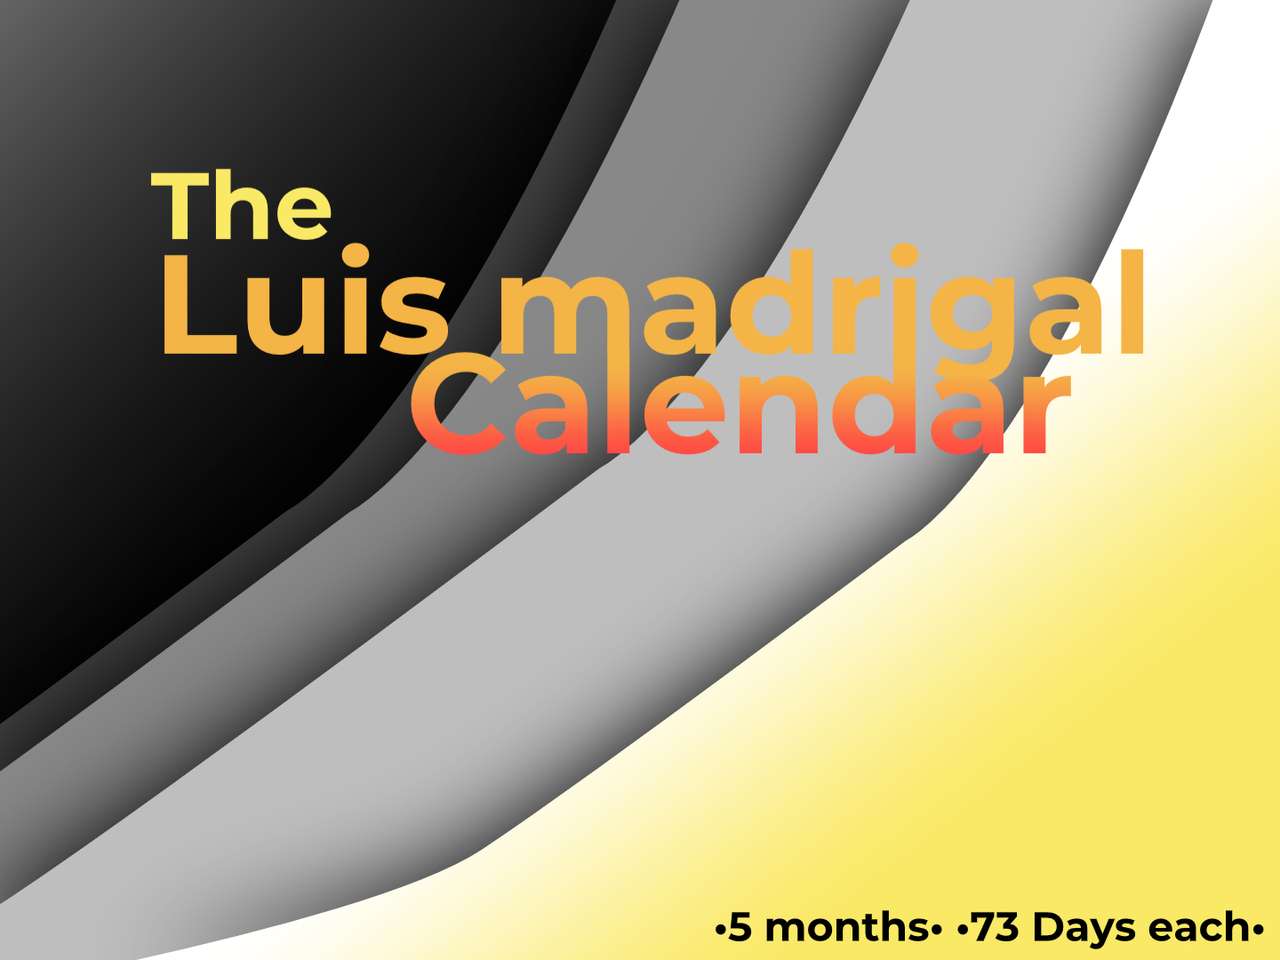 Il Calendario Luis Madrigal puzzle online